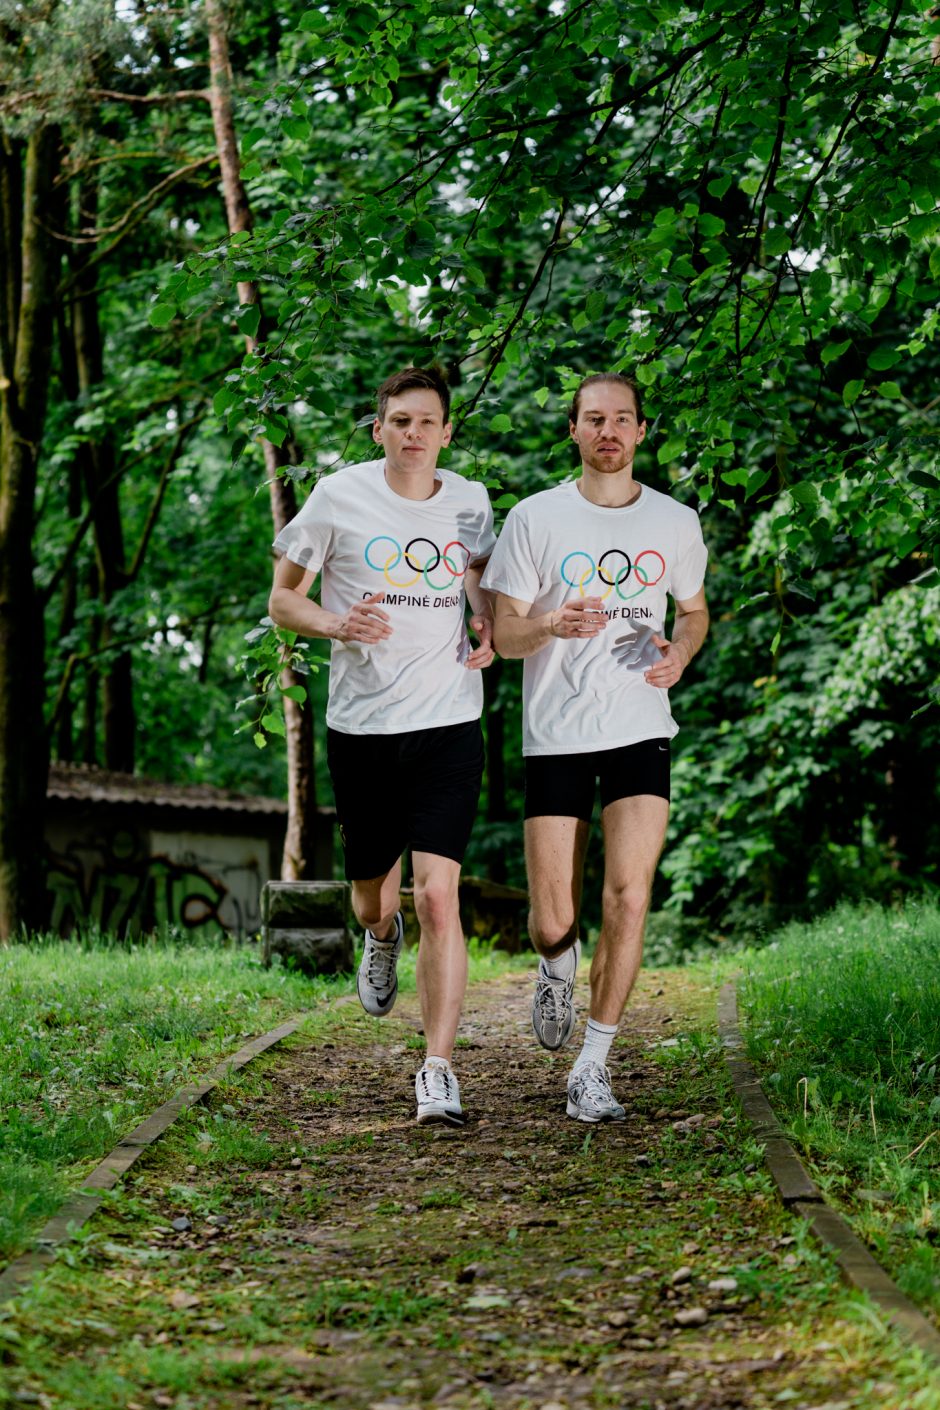 Olimpinę dieną bėgdami švęs ir žinomi žmonės, iniciatyvą palaiko pirmoji šalies ponia